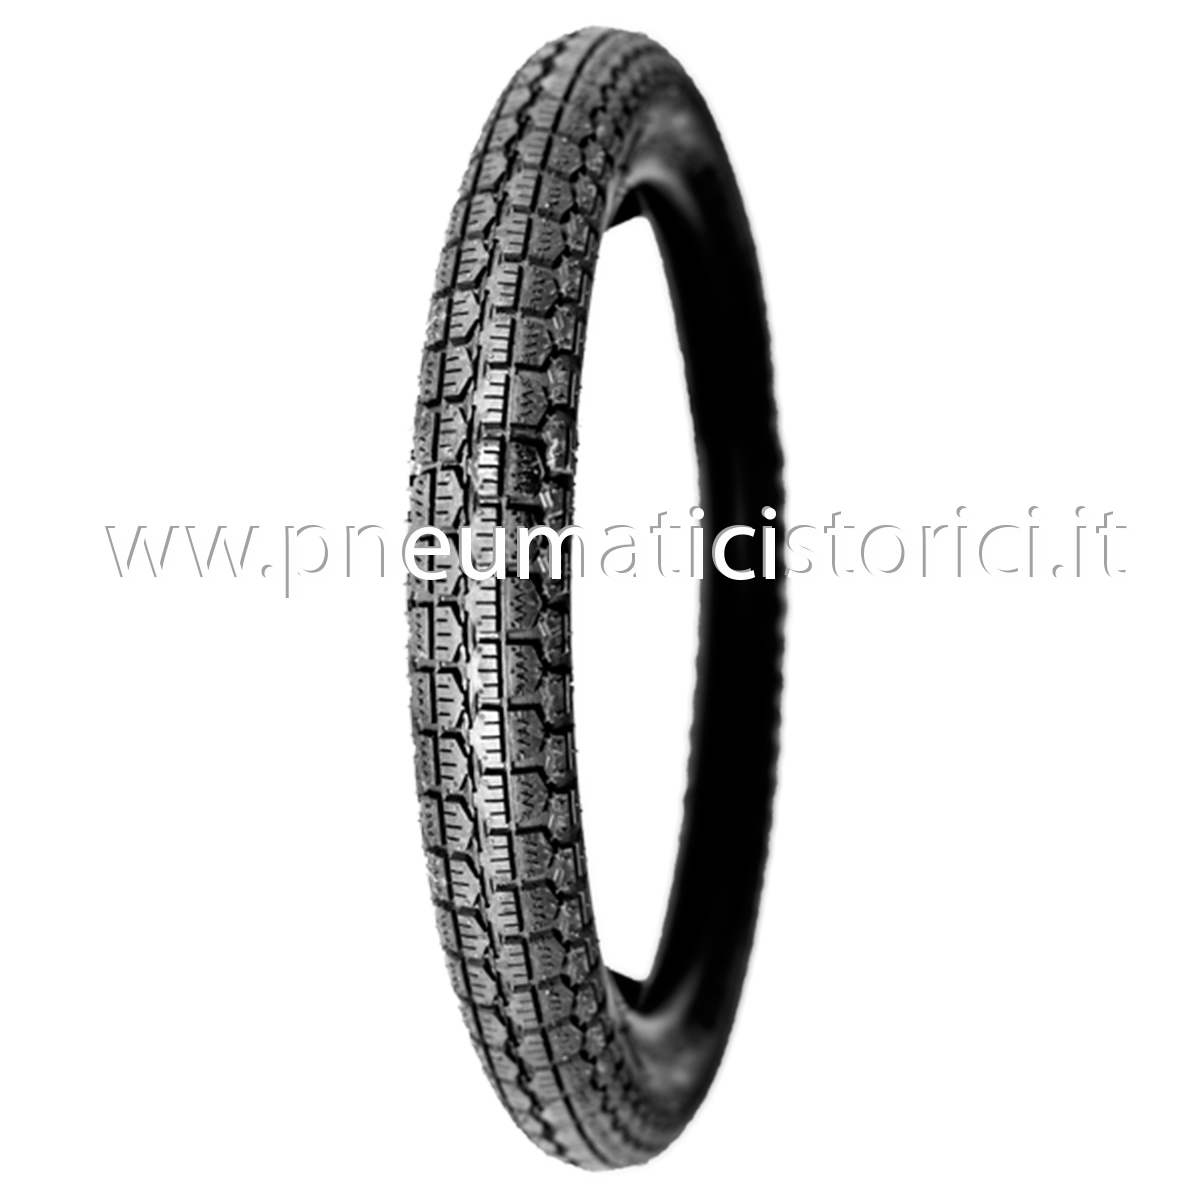 2.50-19 SCOLPITO Pneumatici Gomme moto epoca ORIGINALI Italian Classic Tire 